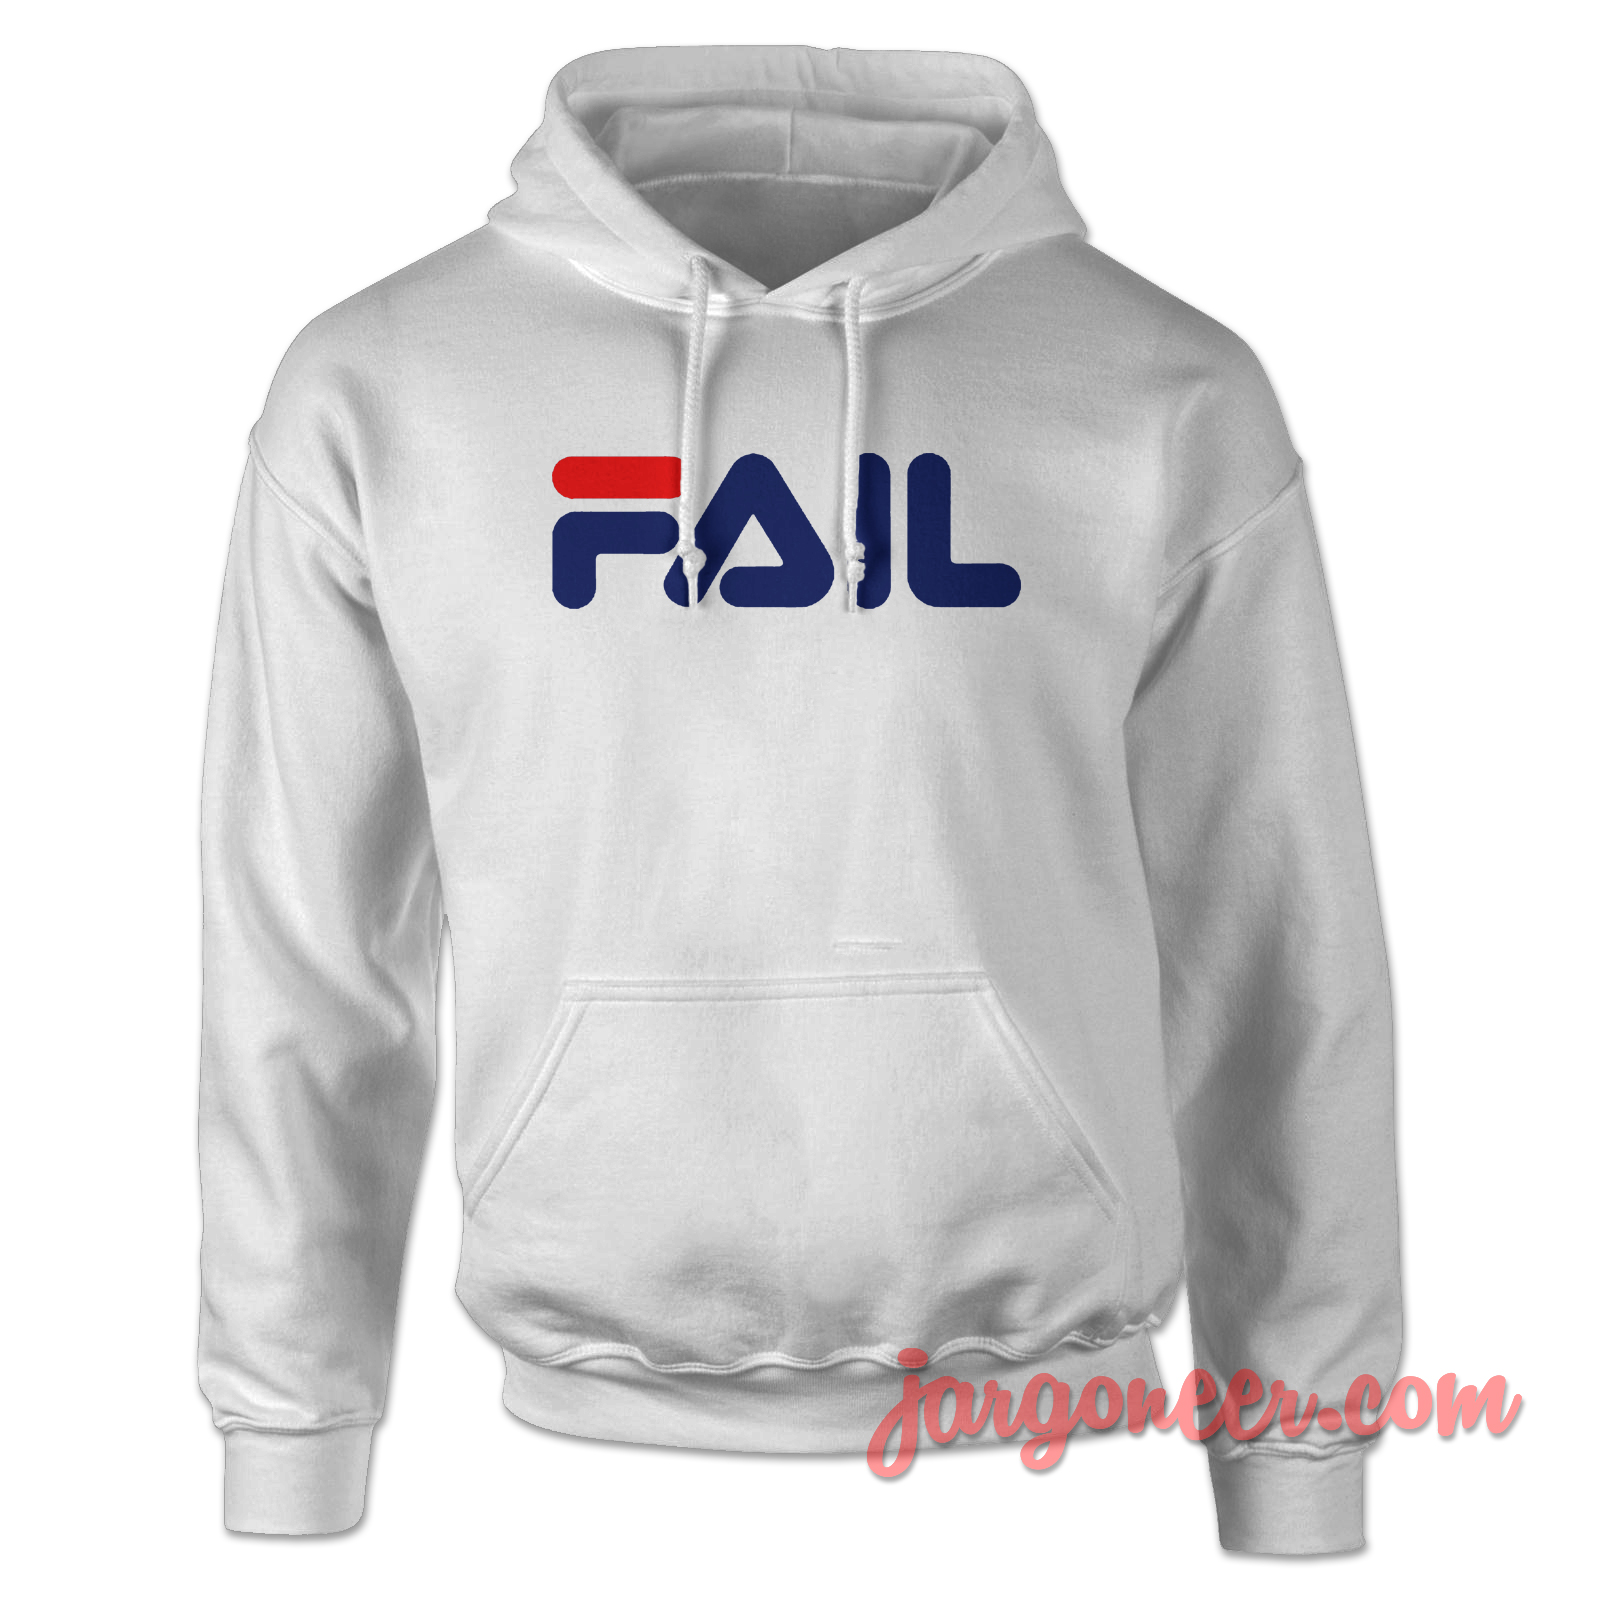 Fila Fail Parody 3 - Shop Unique Graphic Cool Shirt Designs